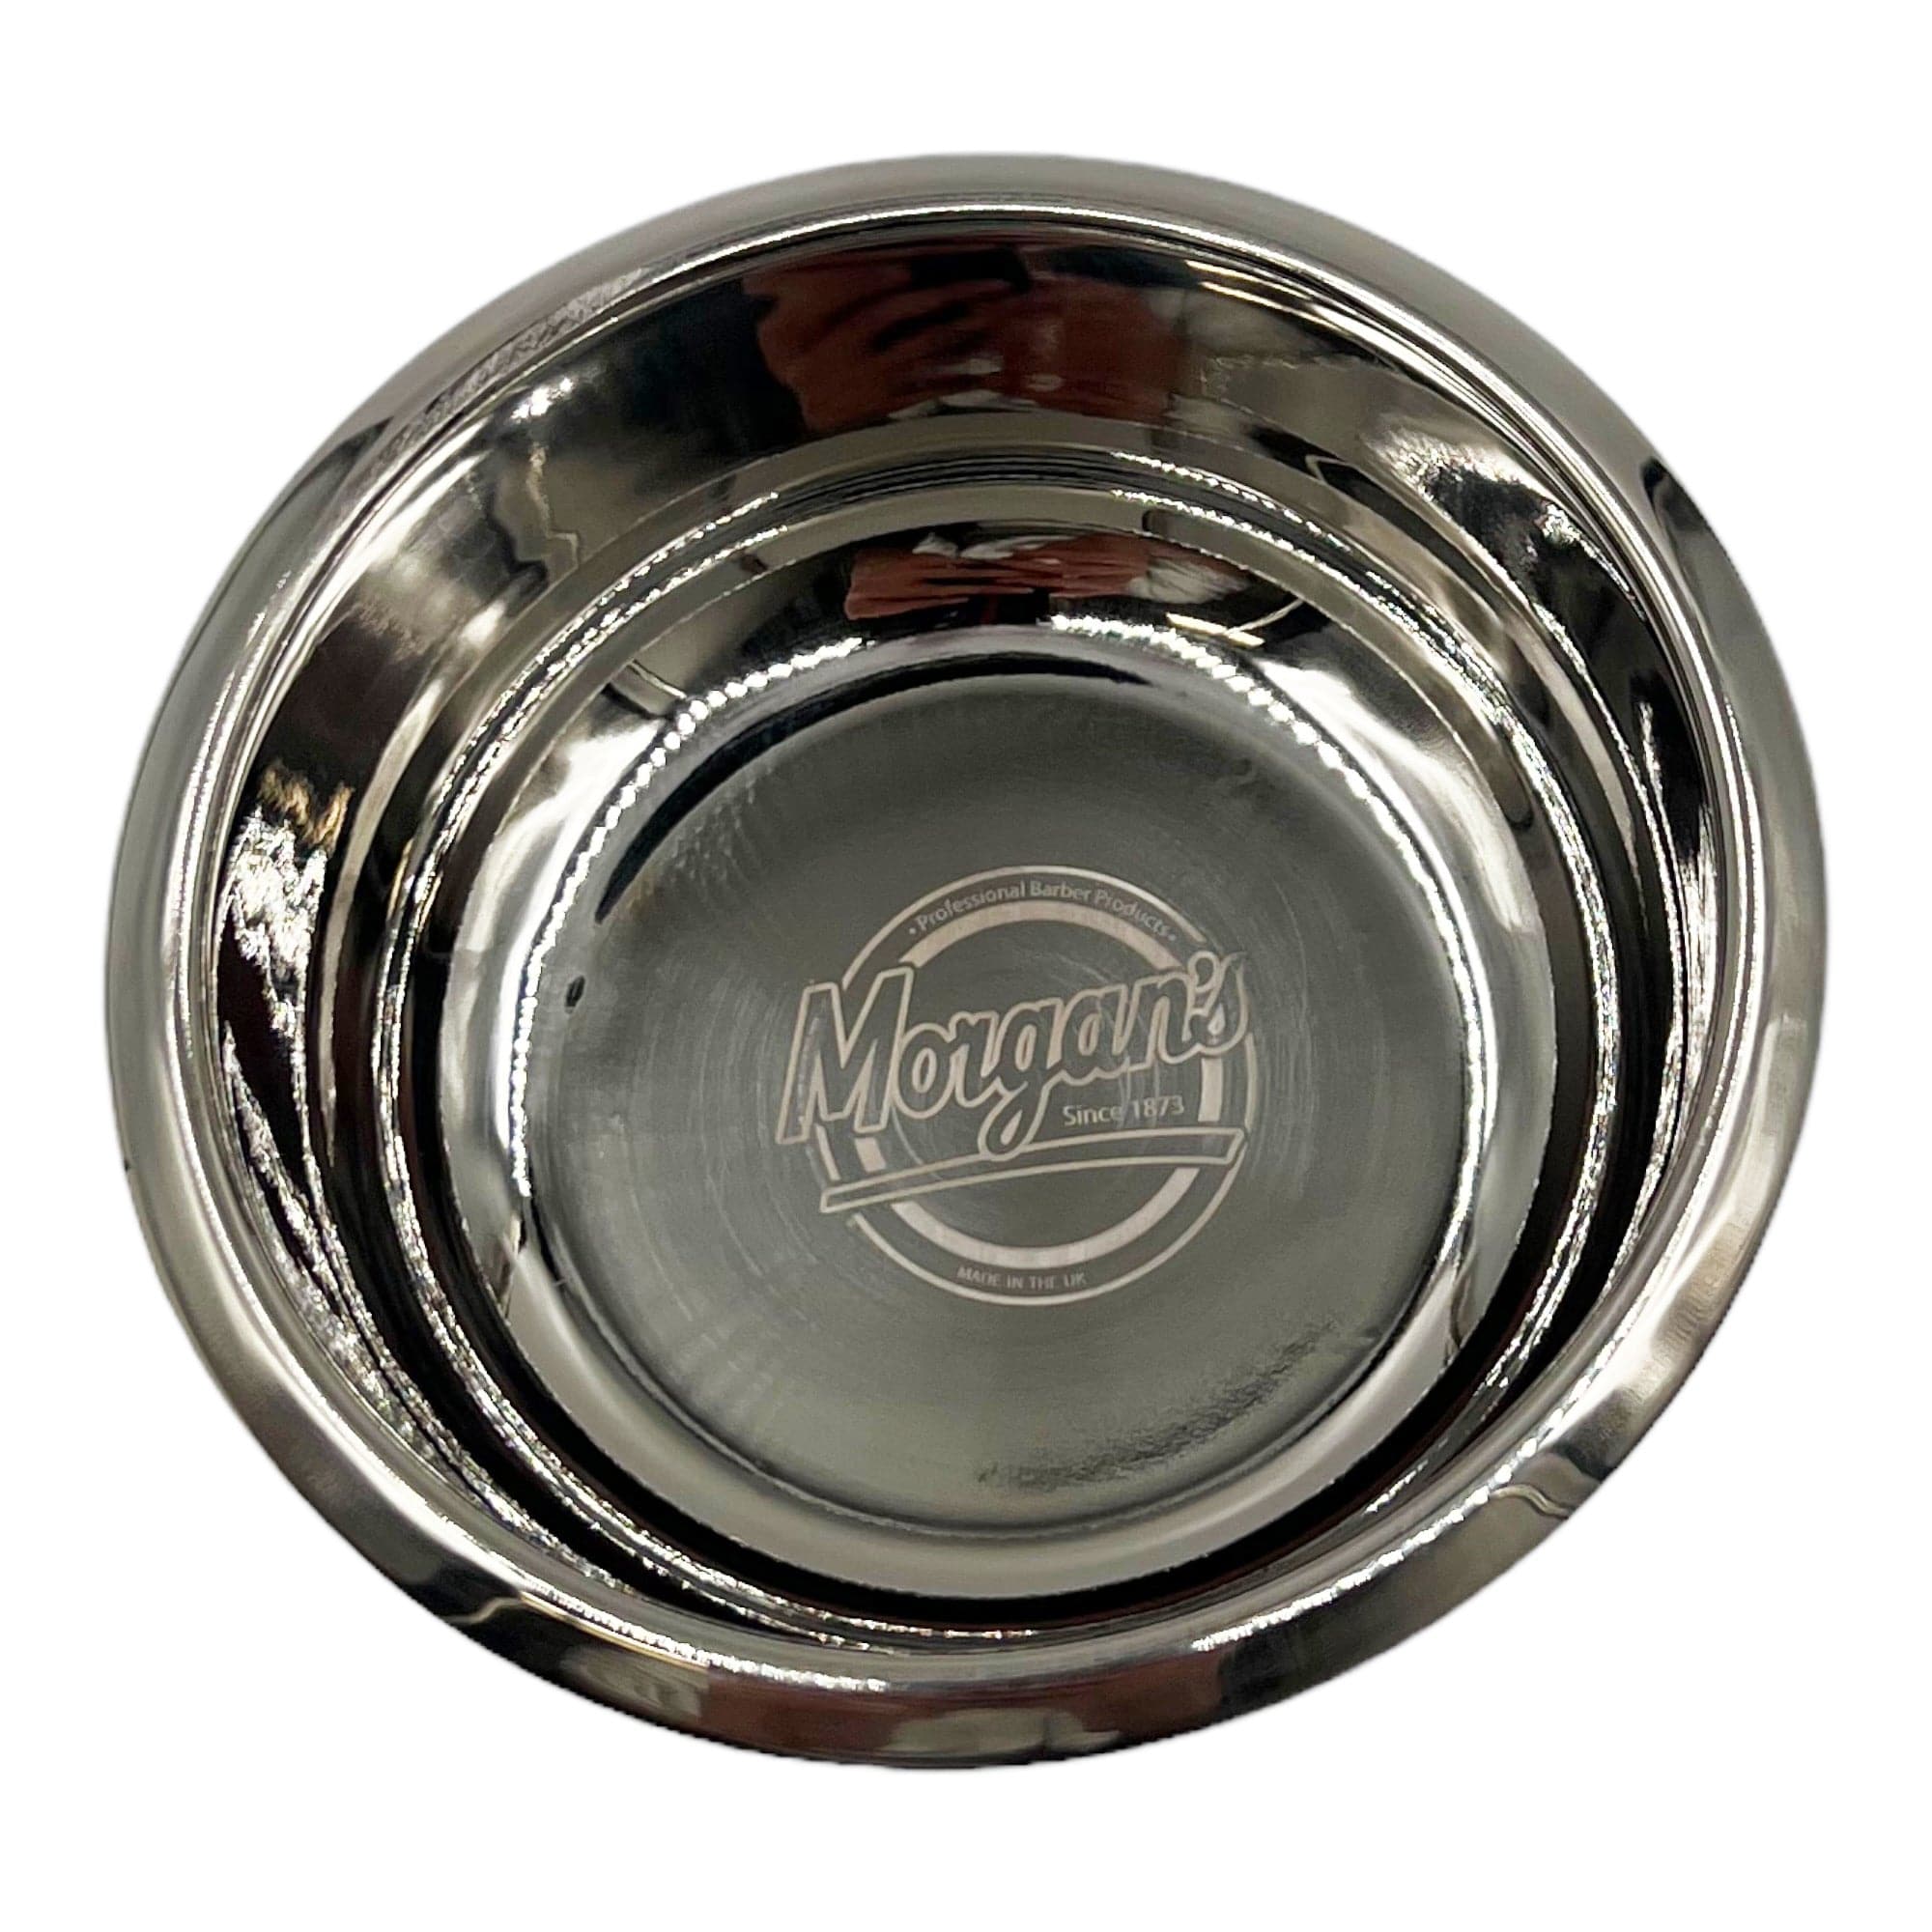 Morgan's - Stainless Steel Shaving Bowl